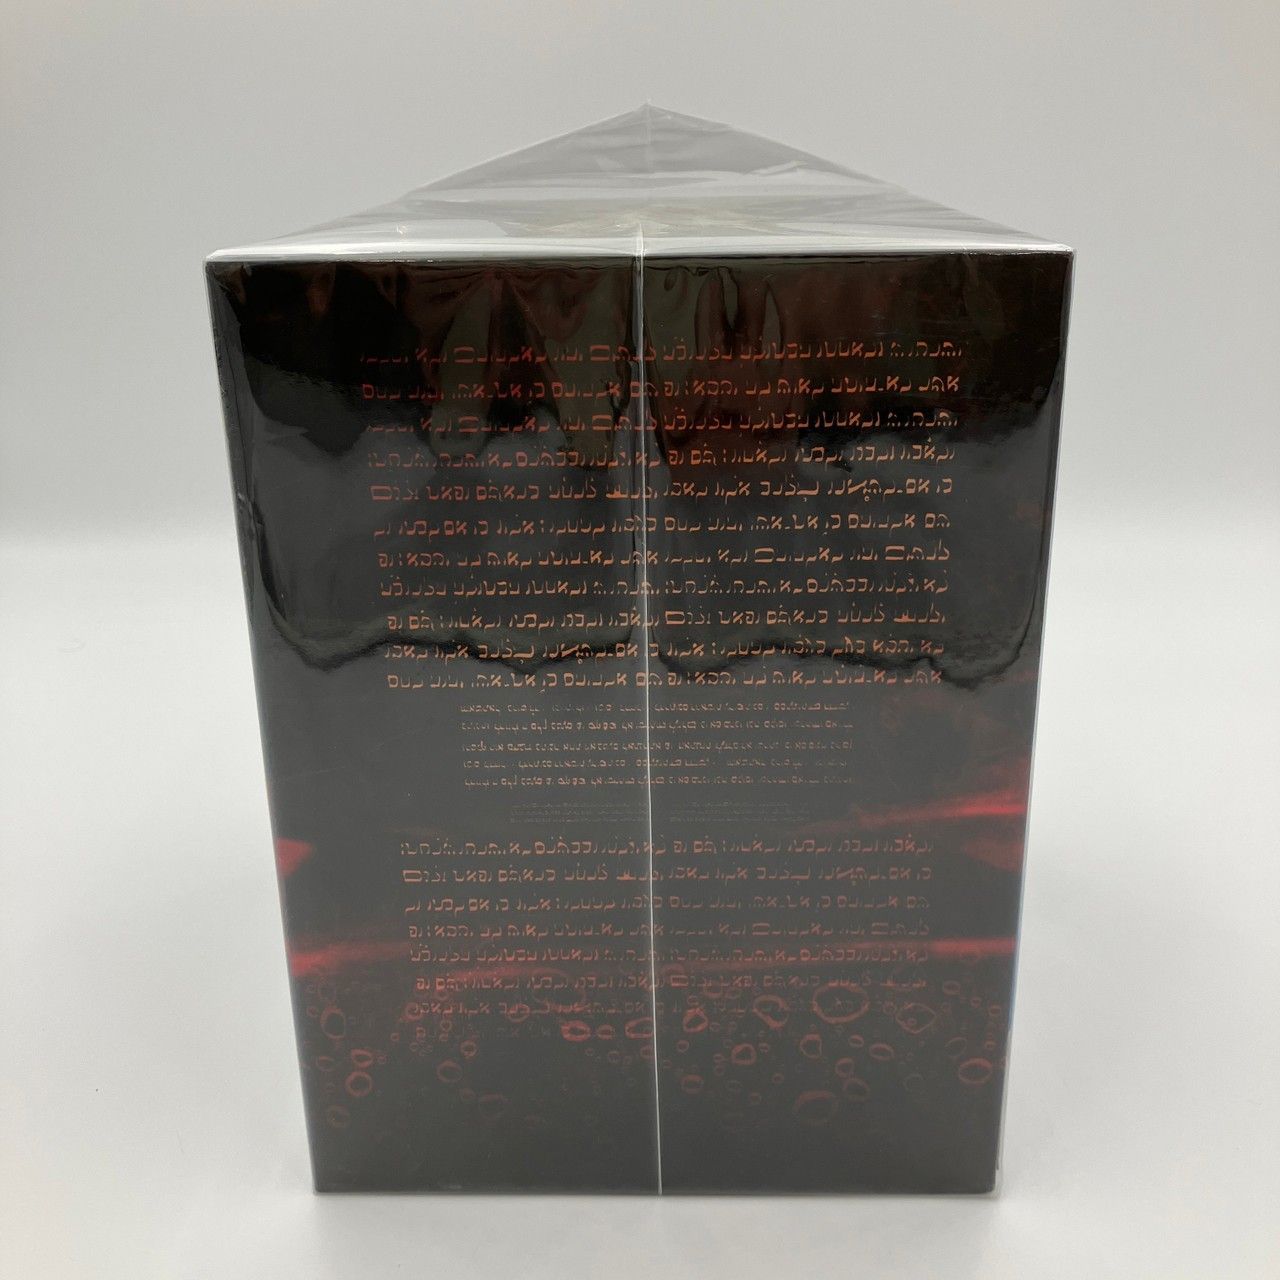 日テレ限定版 新世紀エヴァンゲリオン DVD BOX - メルカリ